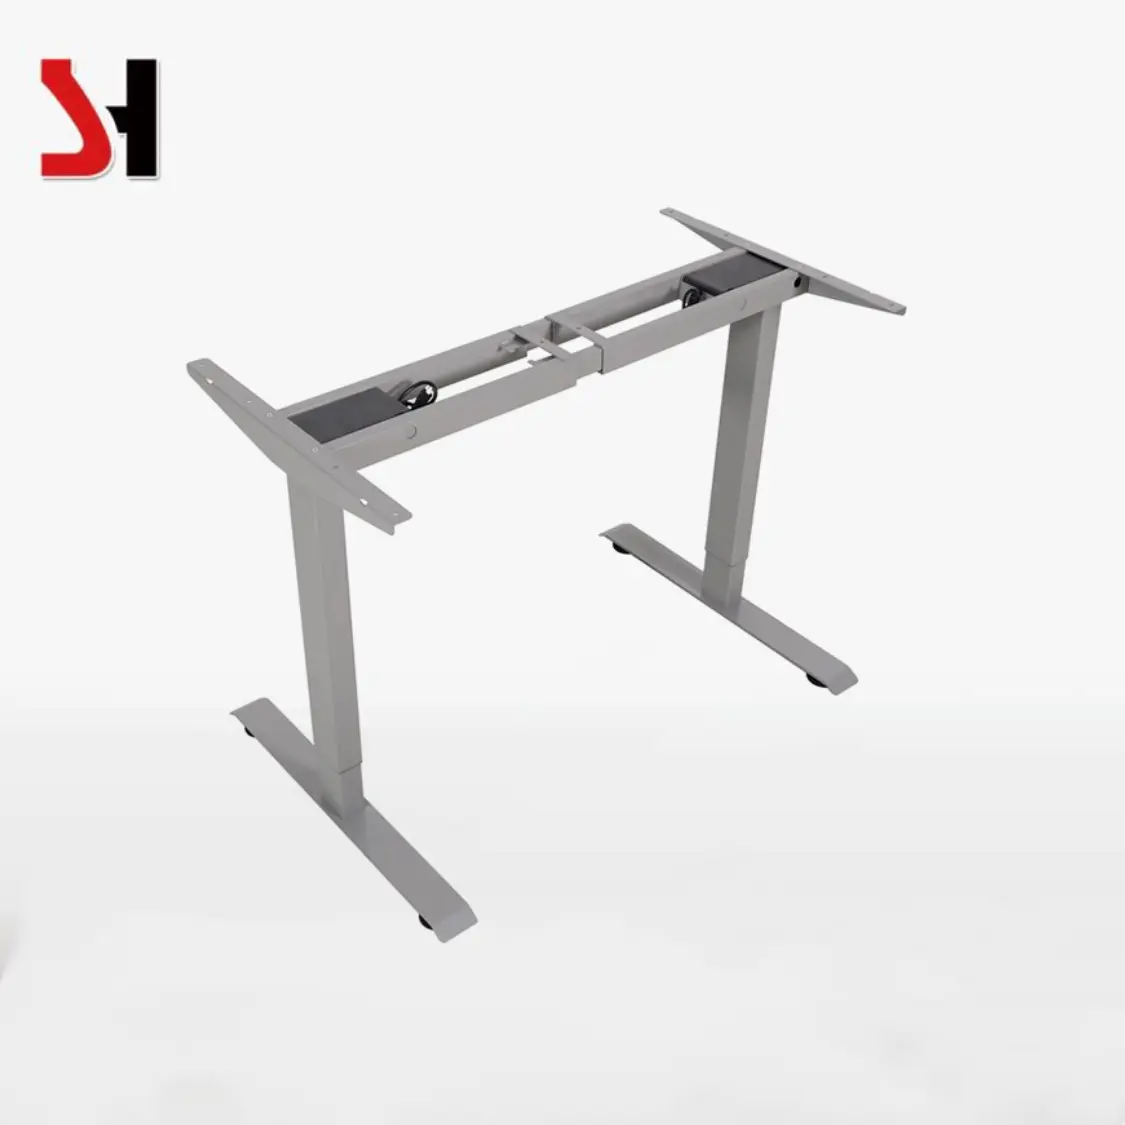 Elektrischer verstellbarer Metall tisch Tragbarer Laptop Stehender minimalisti scher Büromöbel-Schreibtisch